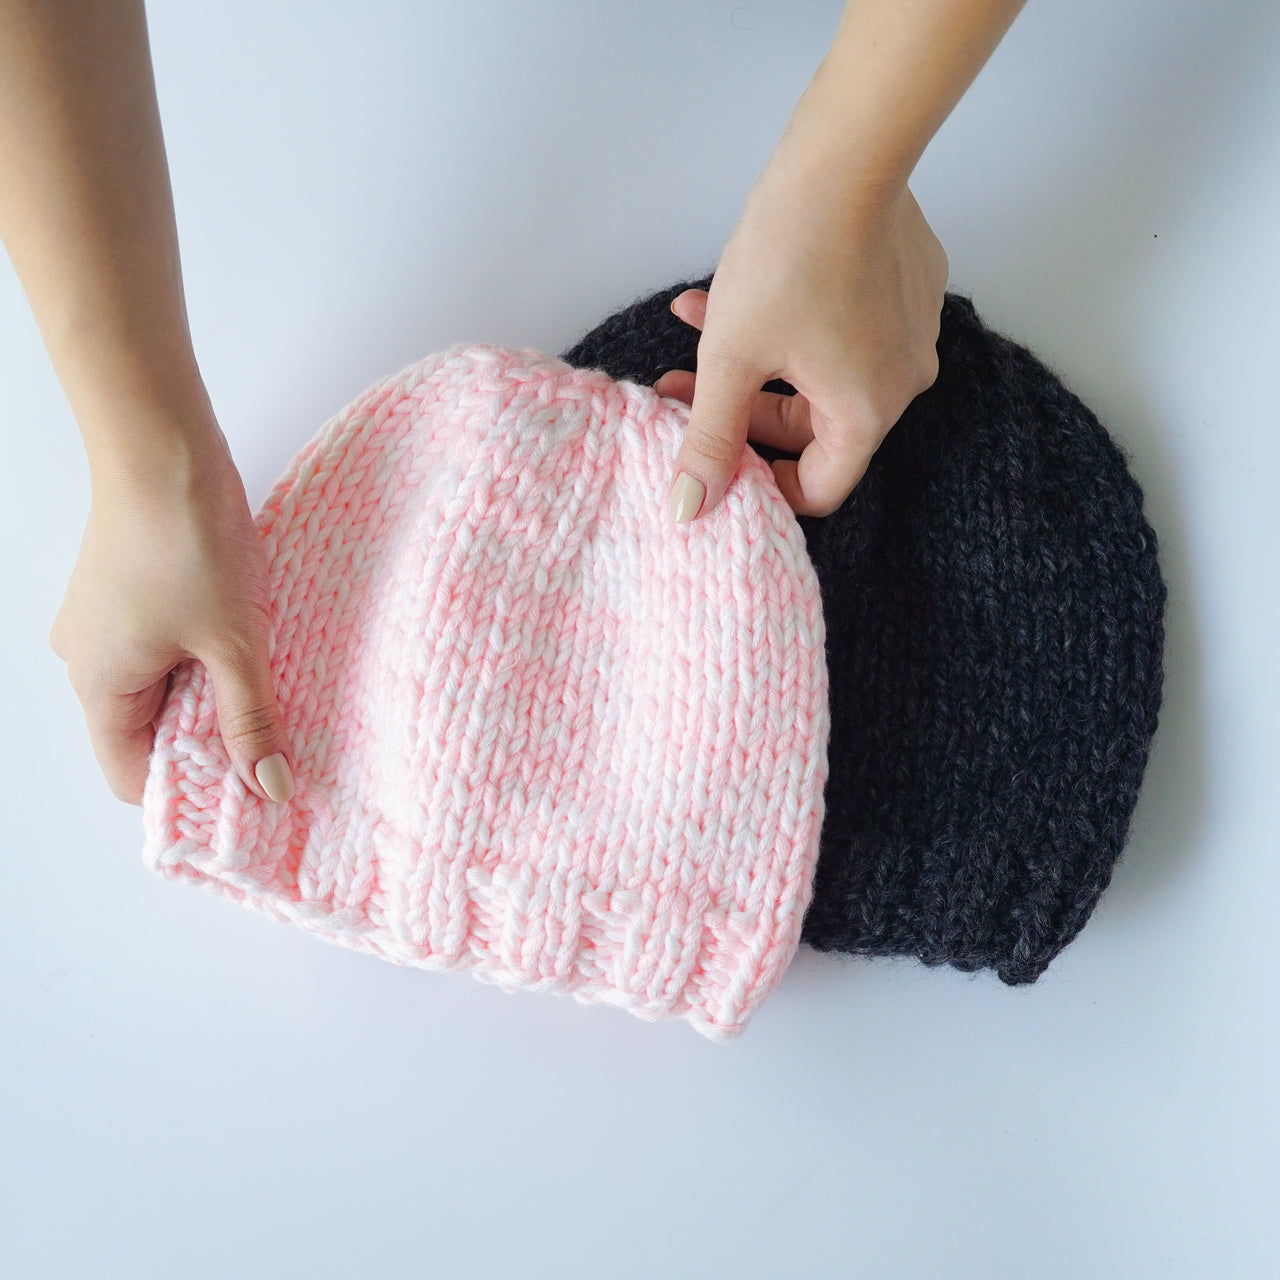 BeKnitting Learn to Knit Loom Kit - DIY Craft w/Round Loom, Yarn, Crochet Hook, & Pen | for Kids & Adults